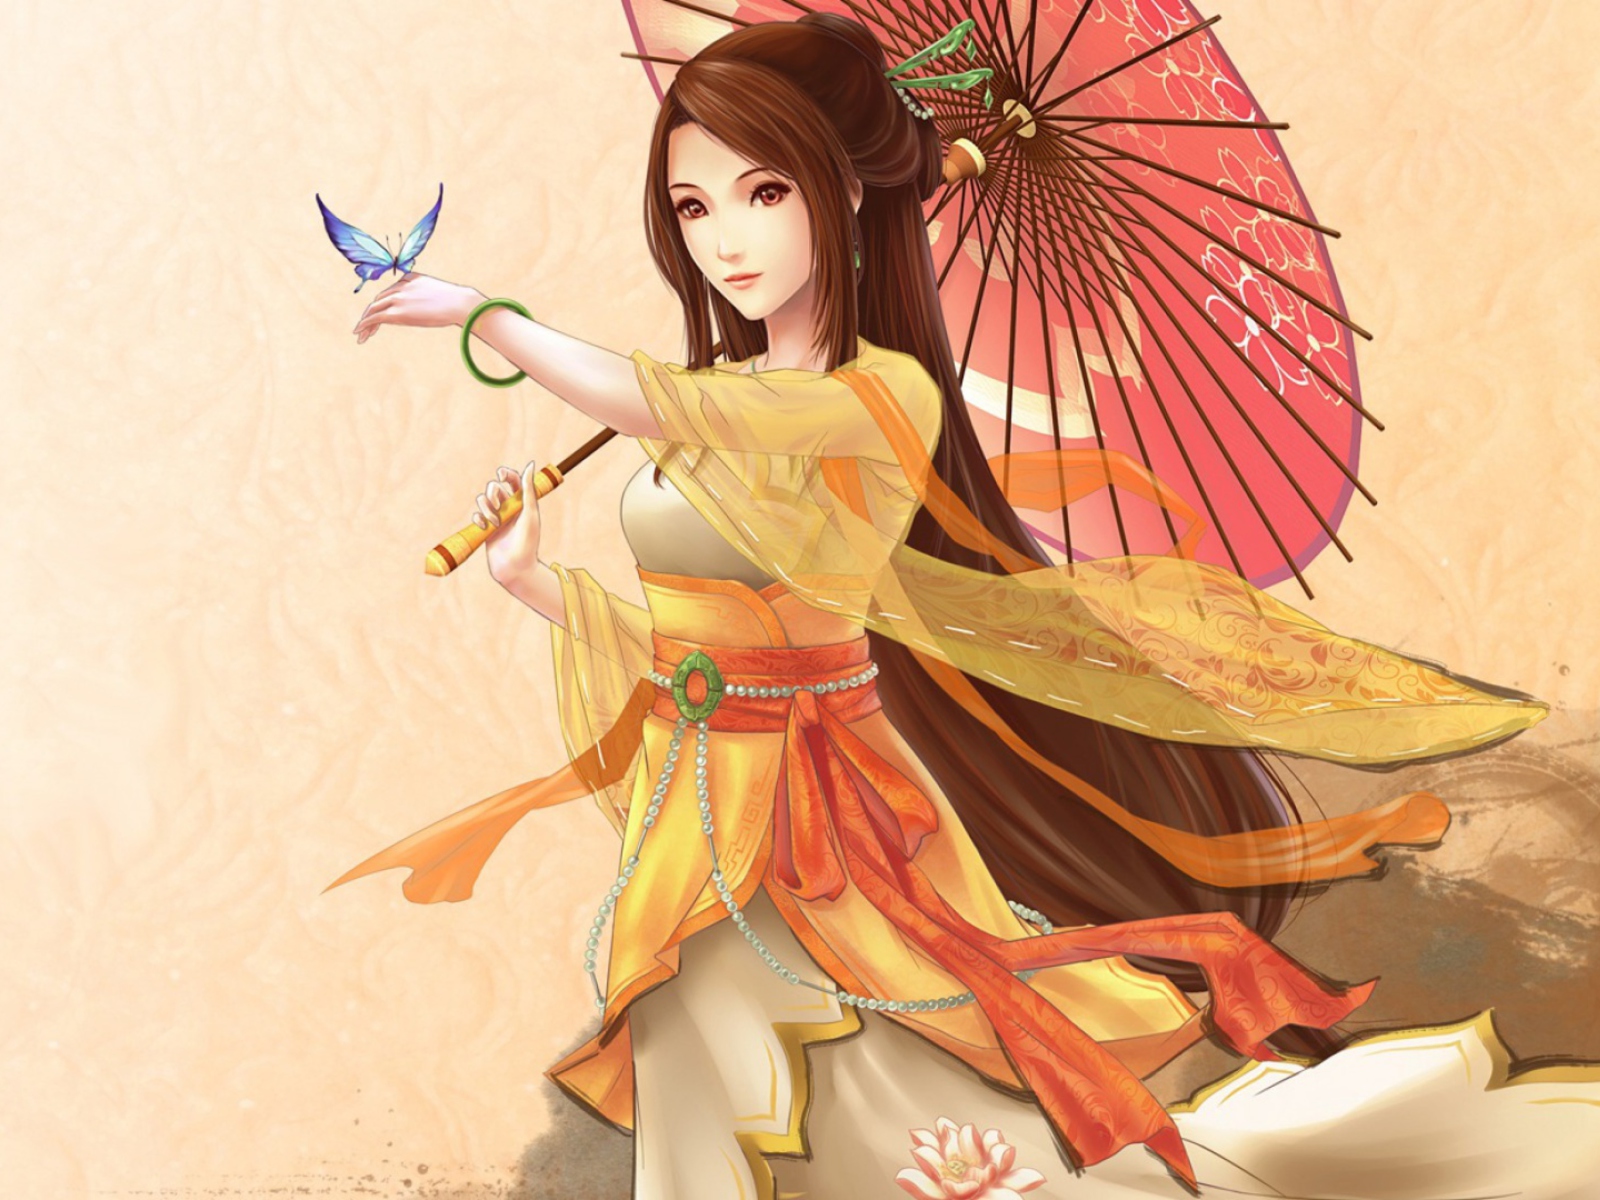 Sfondi Japanese Woman & Butterfly 1600x1200